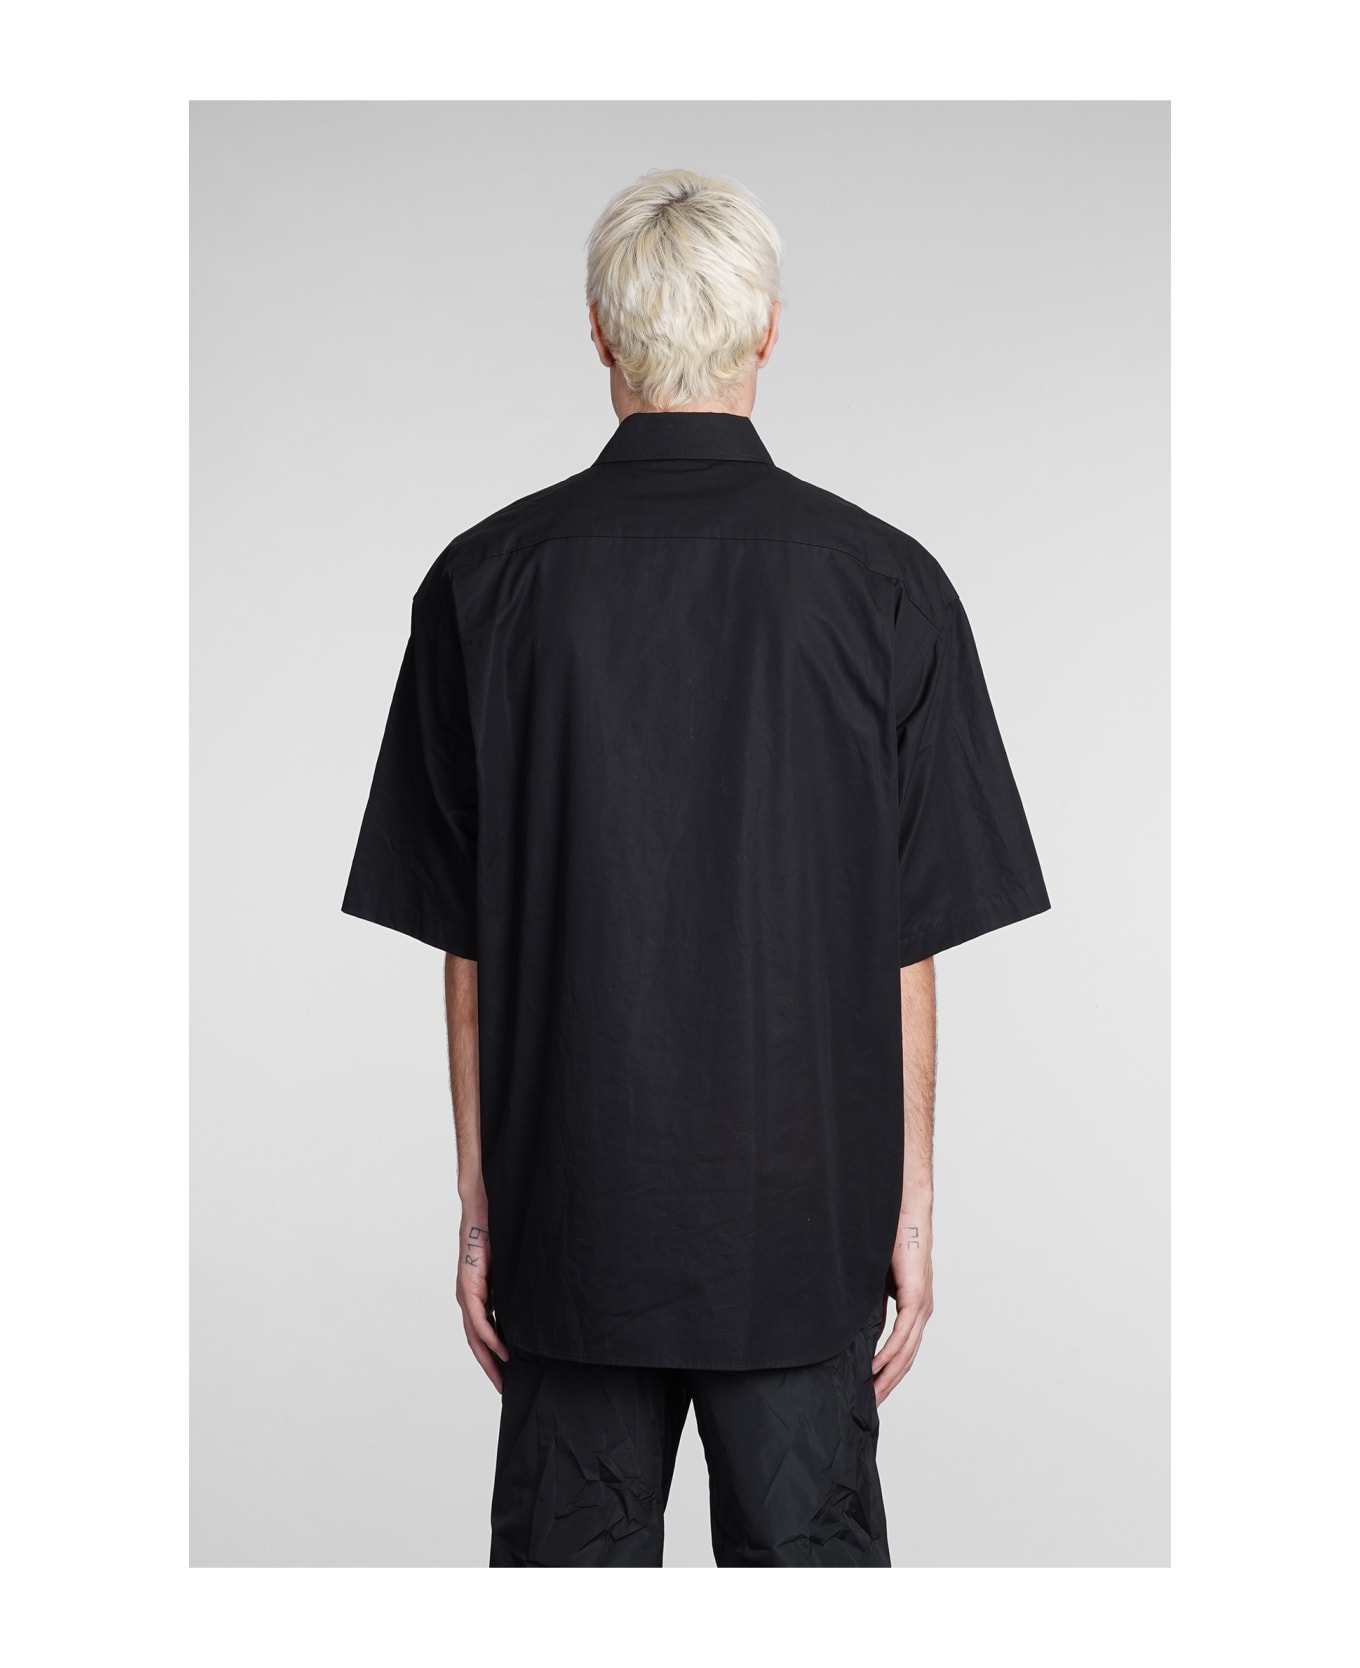 Balenciaga Shirt In Black Cotton - black